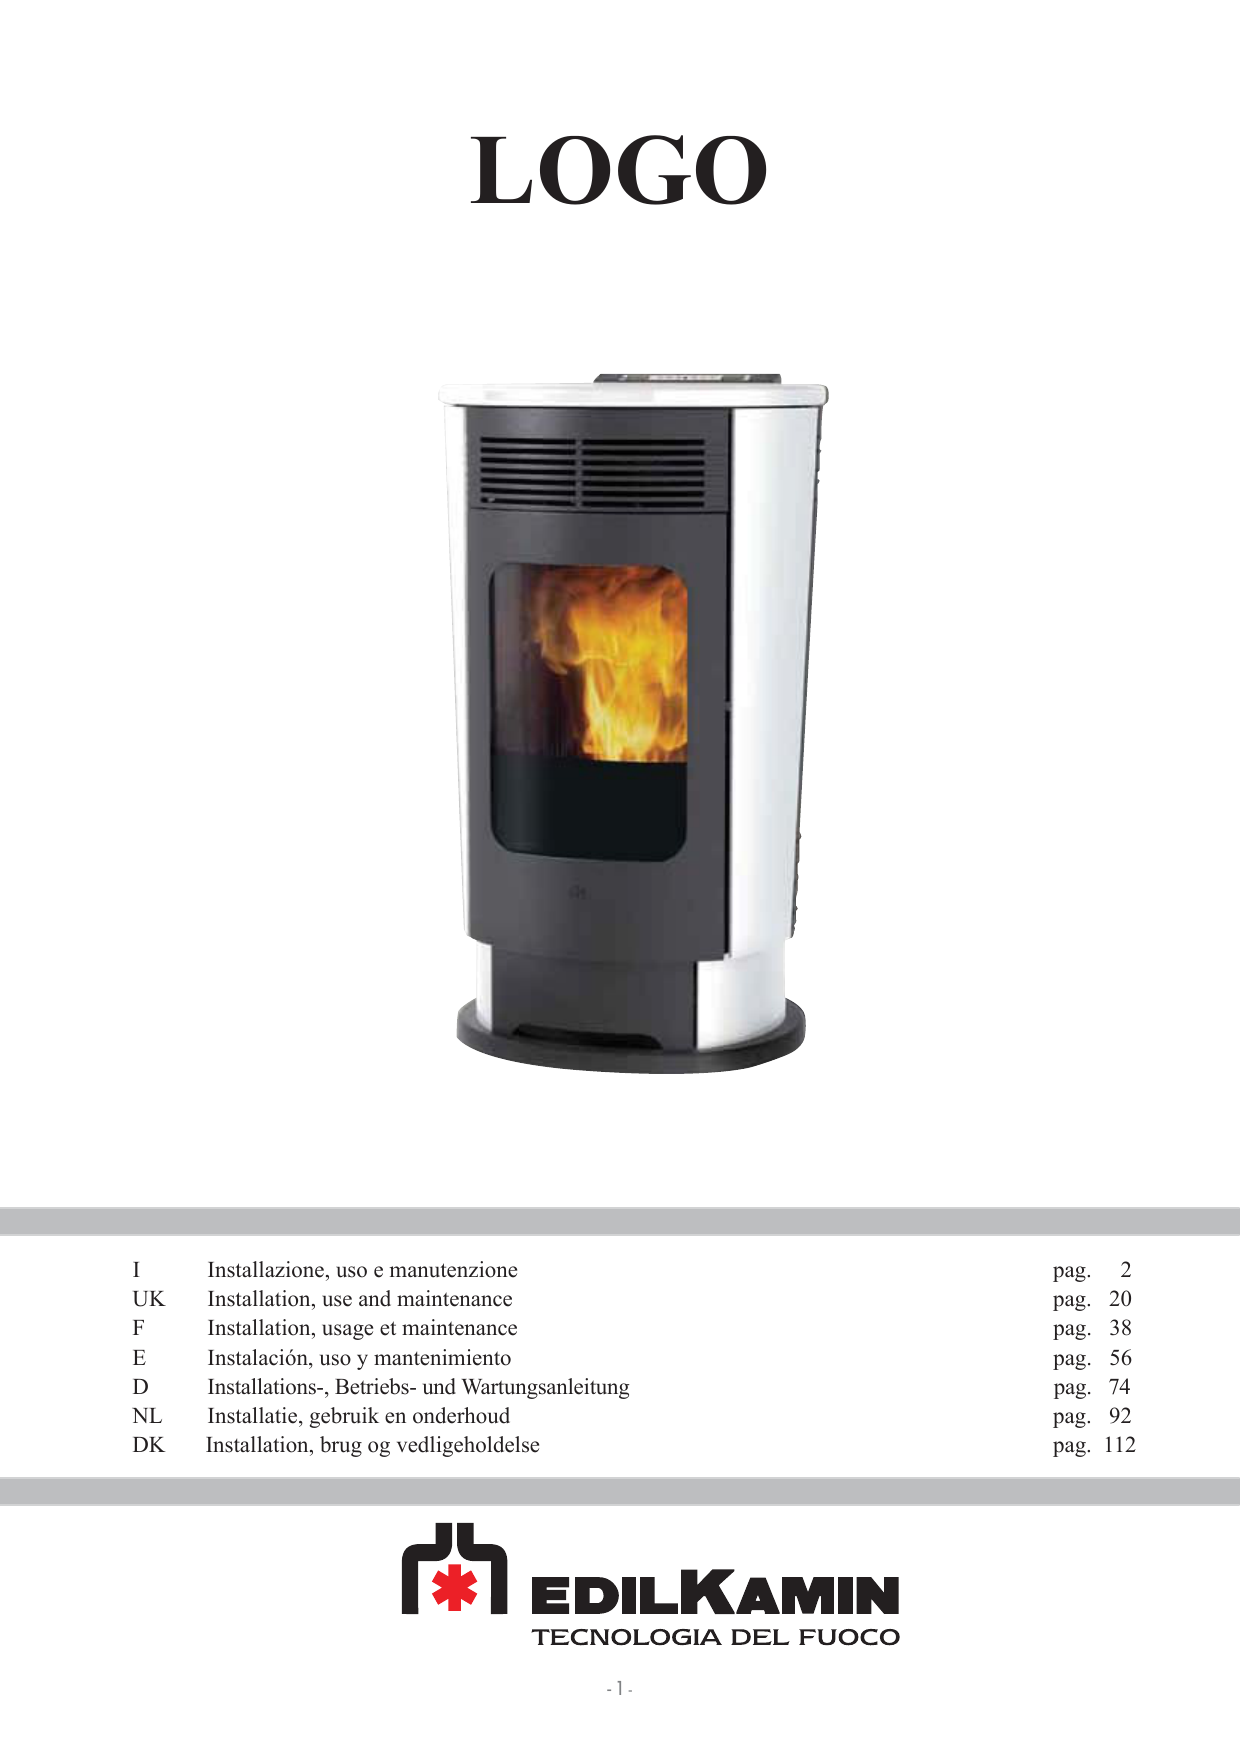 Gas Fireplace thermocouple Unique I Installazione Uso E Manutenzione Pag 2 Uk